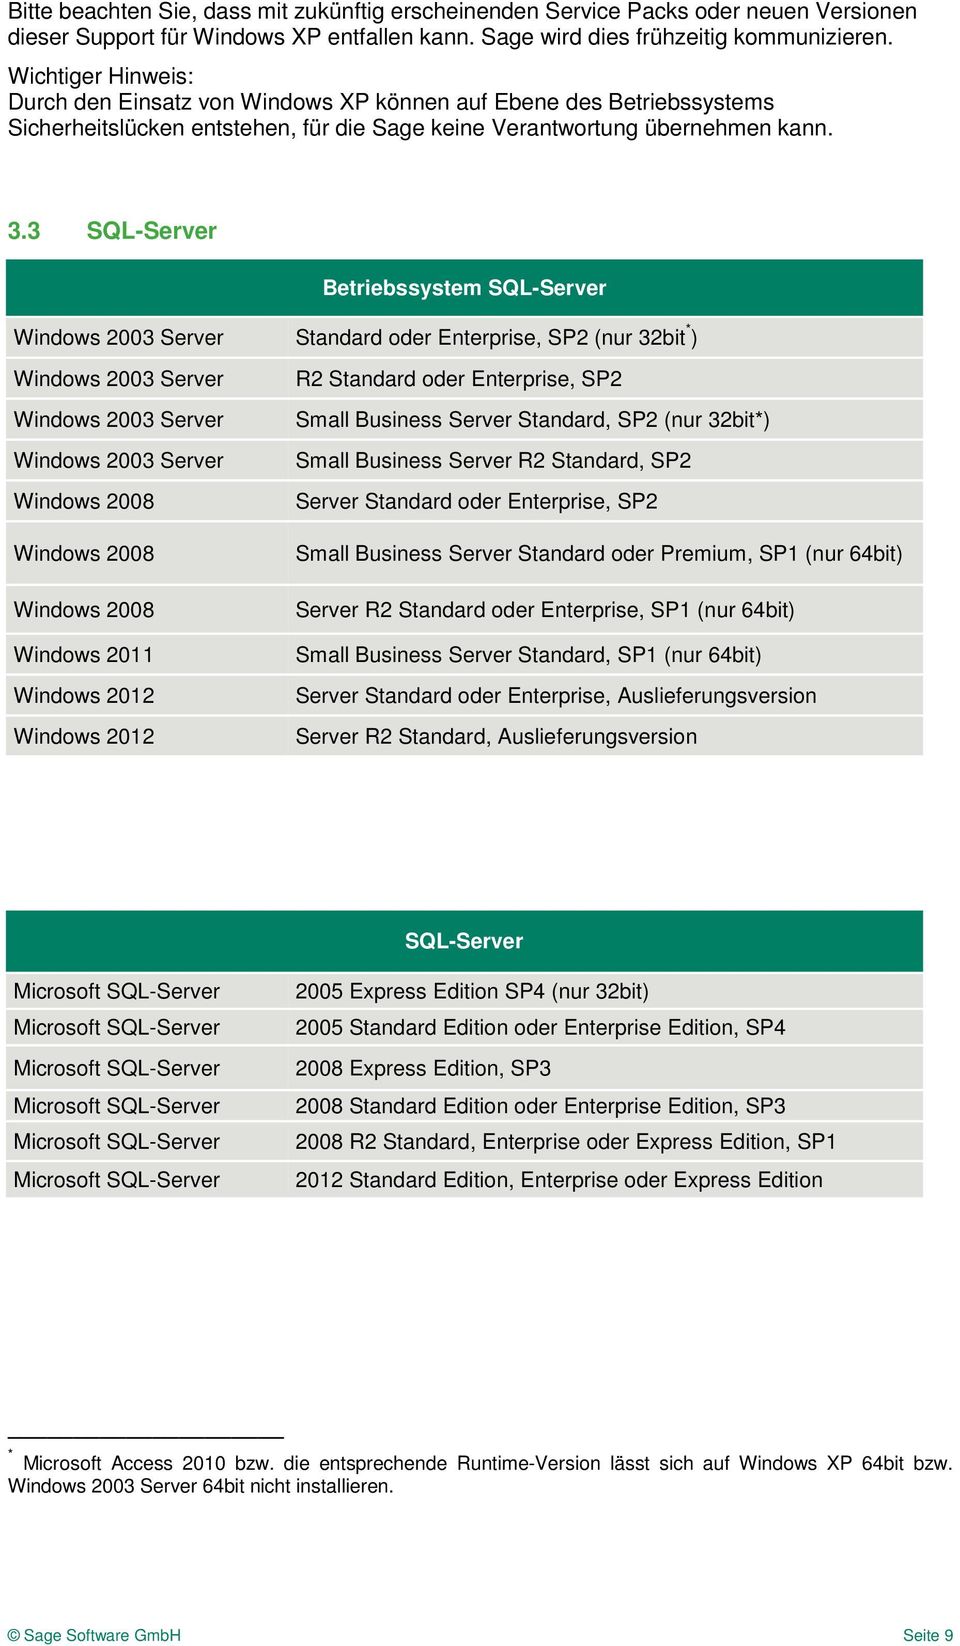 3 SQL-Server Betriebssystem SQL-Server Windows 2003 Server Standard oder Enterprise, SP2 (nur 32bit * ) Windows 2003 Server Windows 2003 Server Windows 2003 Server Windows 2008 Windows 2008 Windows